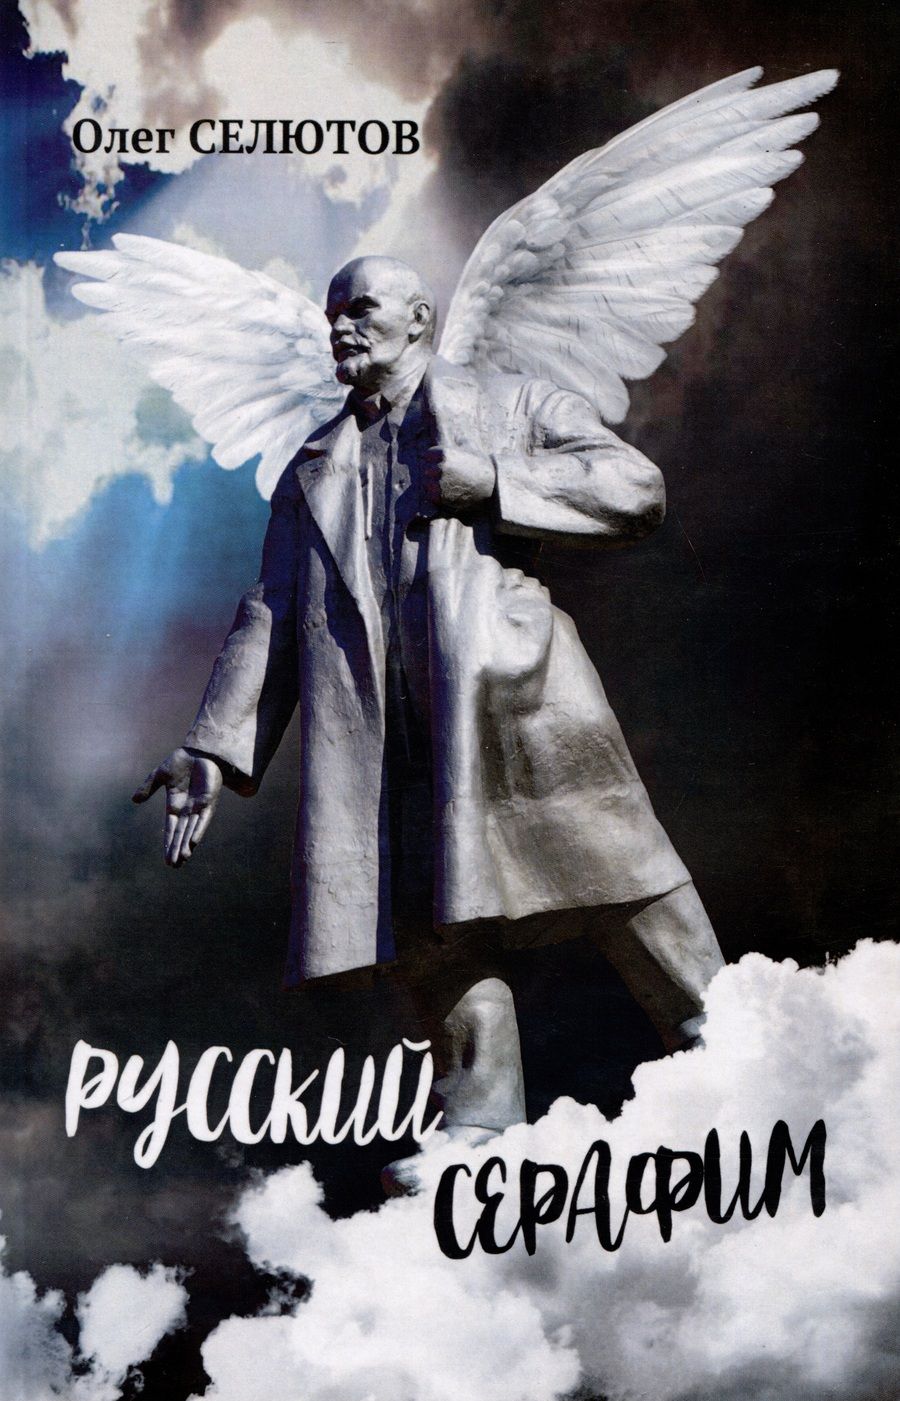 Обложка книги "Селютов: Русский серафим"